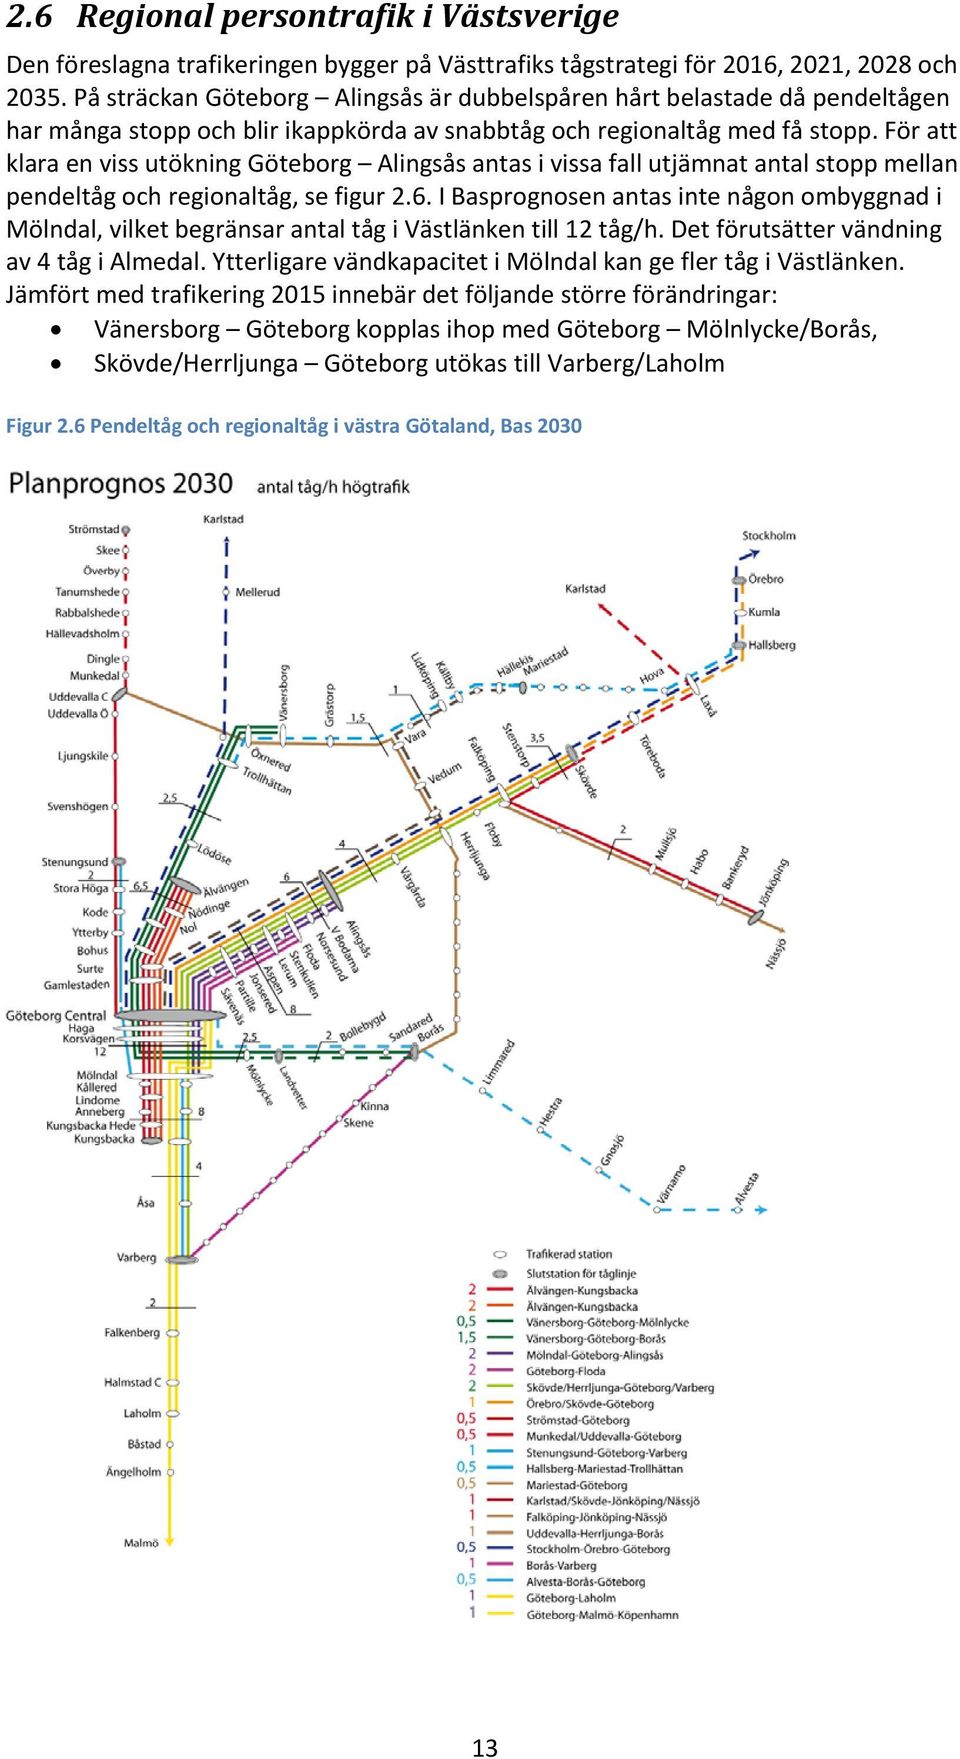 För att klara en viss utökning Göteborg Alingsås antas i vissa fall utjämnat antal stopp mellan pendeltåg och regionaltåg, se figur 2.6.